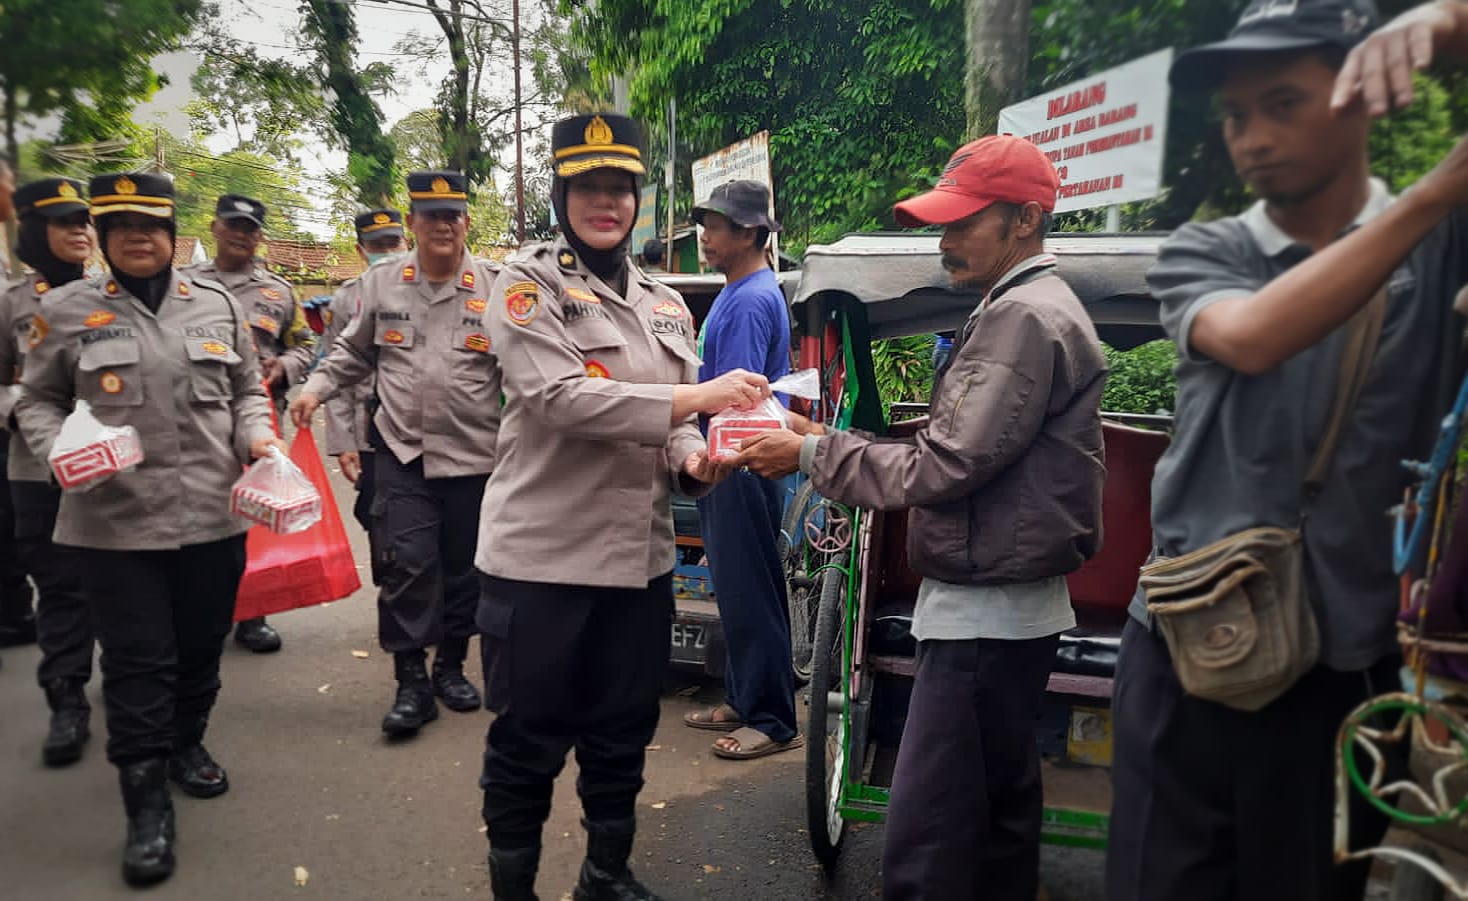 Jajaran Polresta Bogor Kota saat membagikan paket takjil buka puasa kepada sejumlah tukang becak disekitar Polsek Bogor Barat, Kamis (13/4). (Yudha Prananda / Jabar Ekspres)